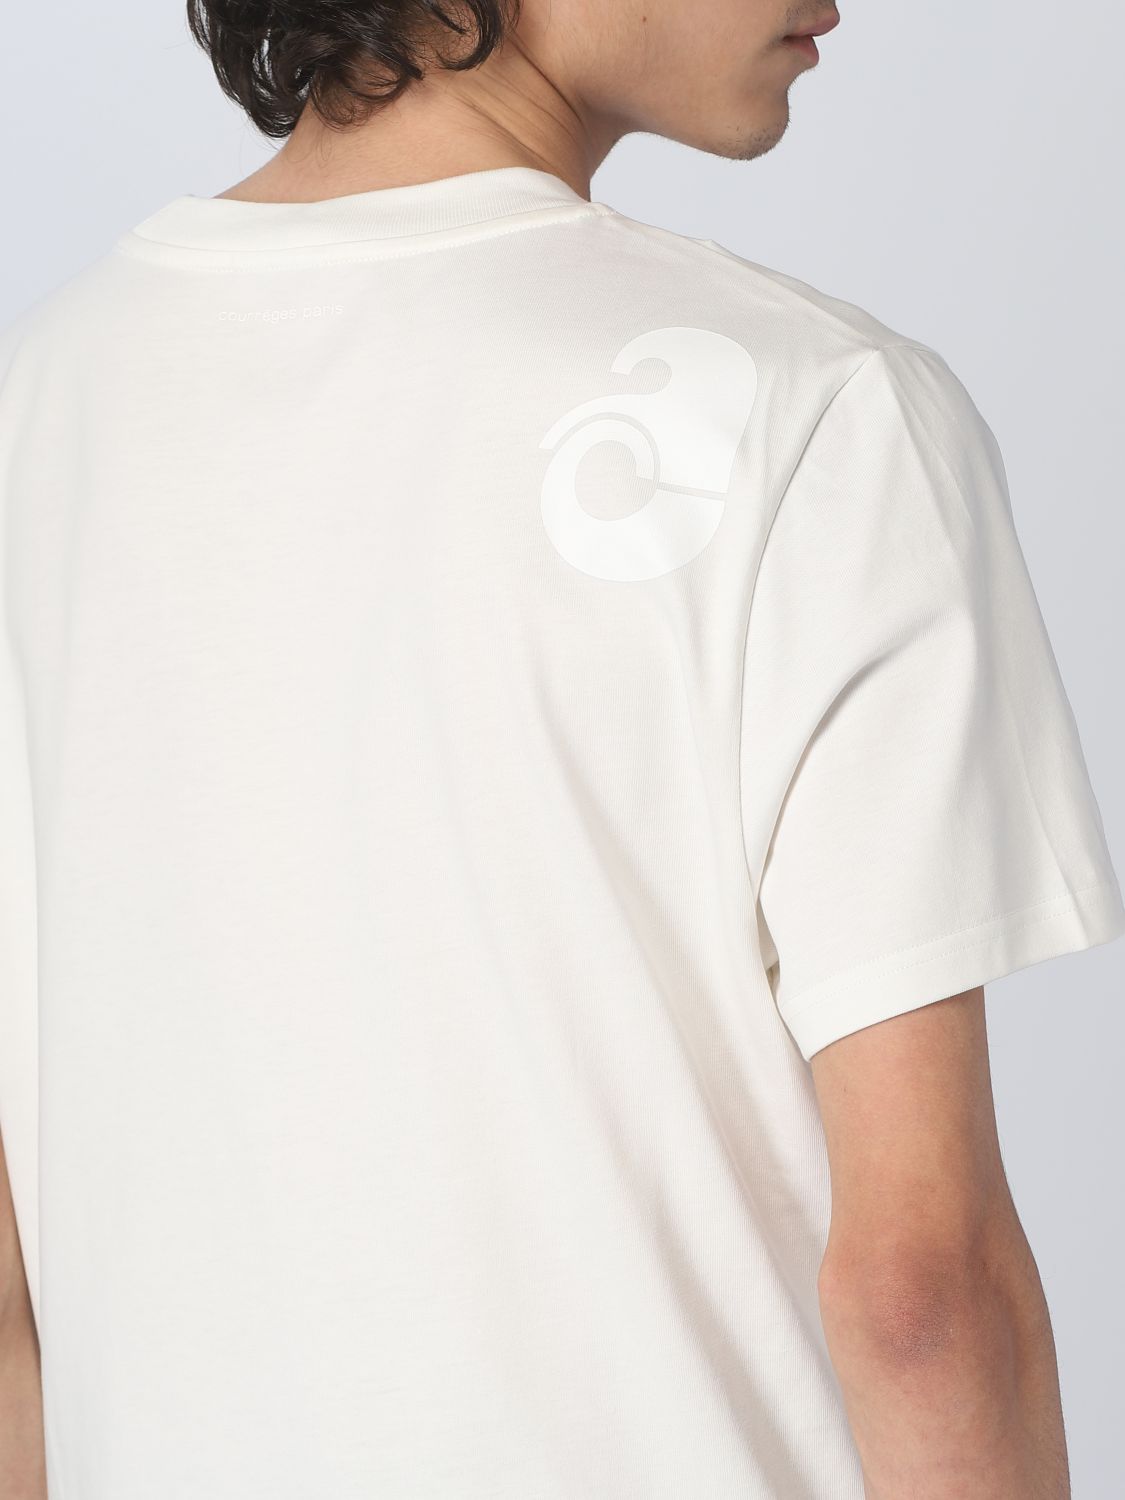 T-shirt Courrèges: T-shirt Courrèges homme blanc 4